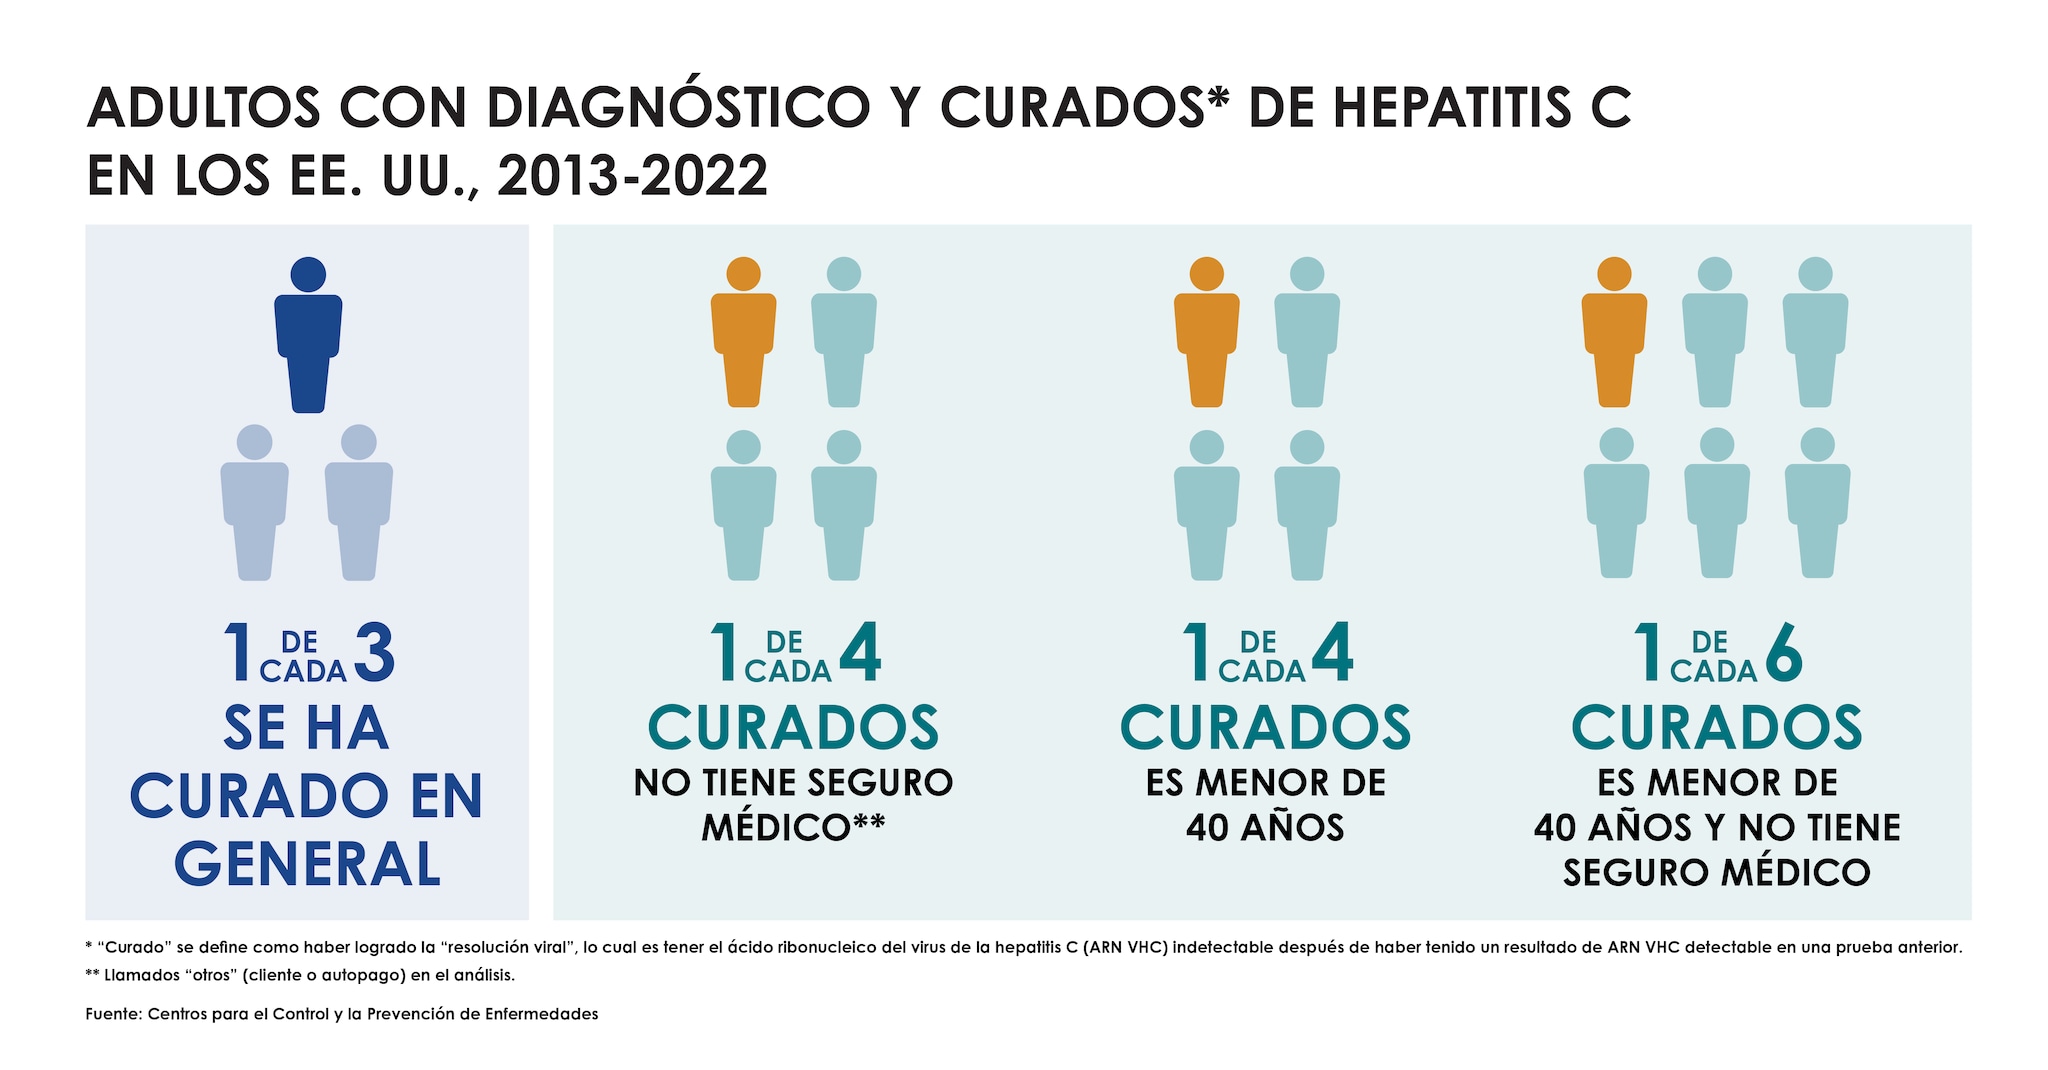 el gráfico muestra cifras de la cantidad de personas con diagnóstico de hepatitis C y que fueron curados. En general, solo 1 de cada 3 fue curado y en menores de 40 años, como también personas sin seguro médico.